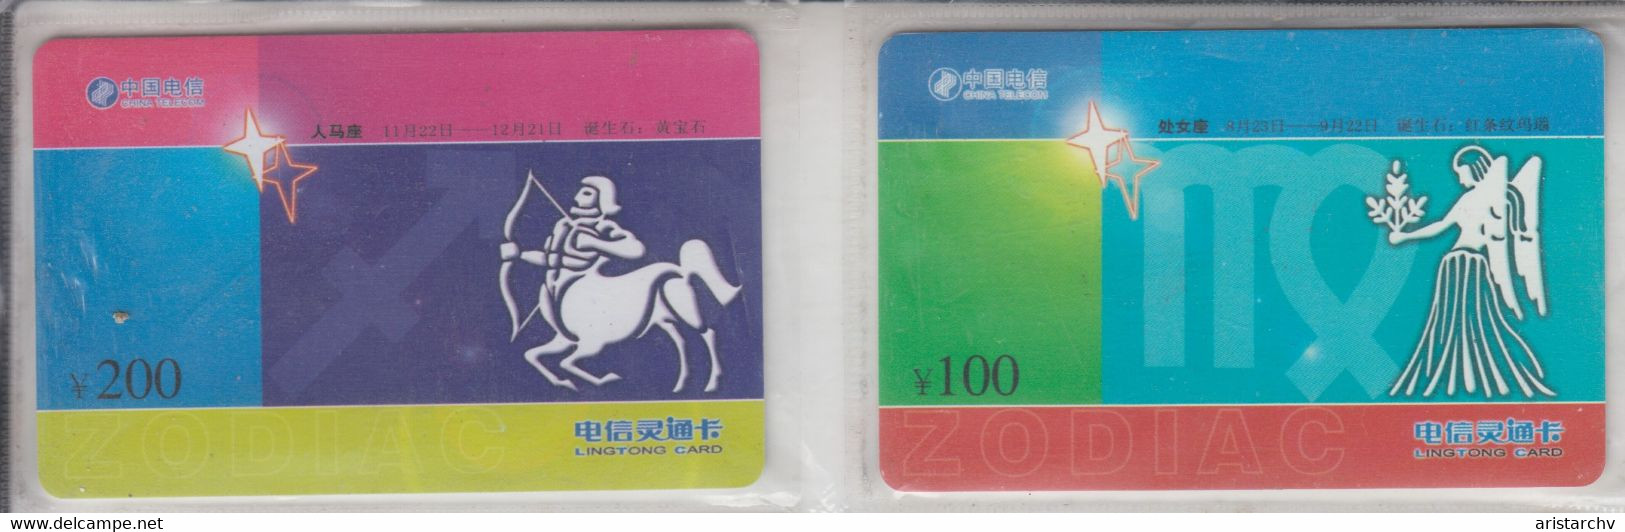 CHINA 2003 ZODIAC HOROSCOPE LUNAR CALENDAR FULL SET OF 12 CARDS - Zodiaque